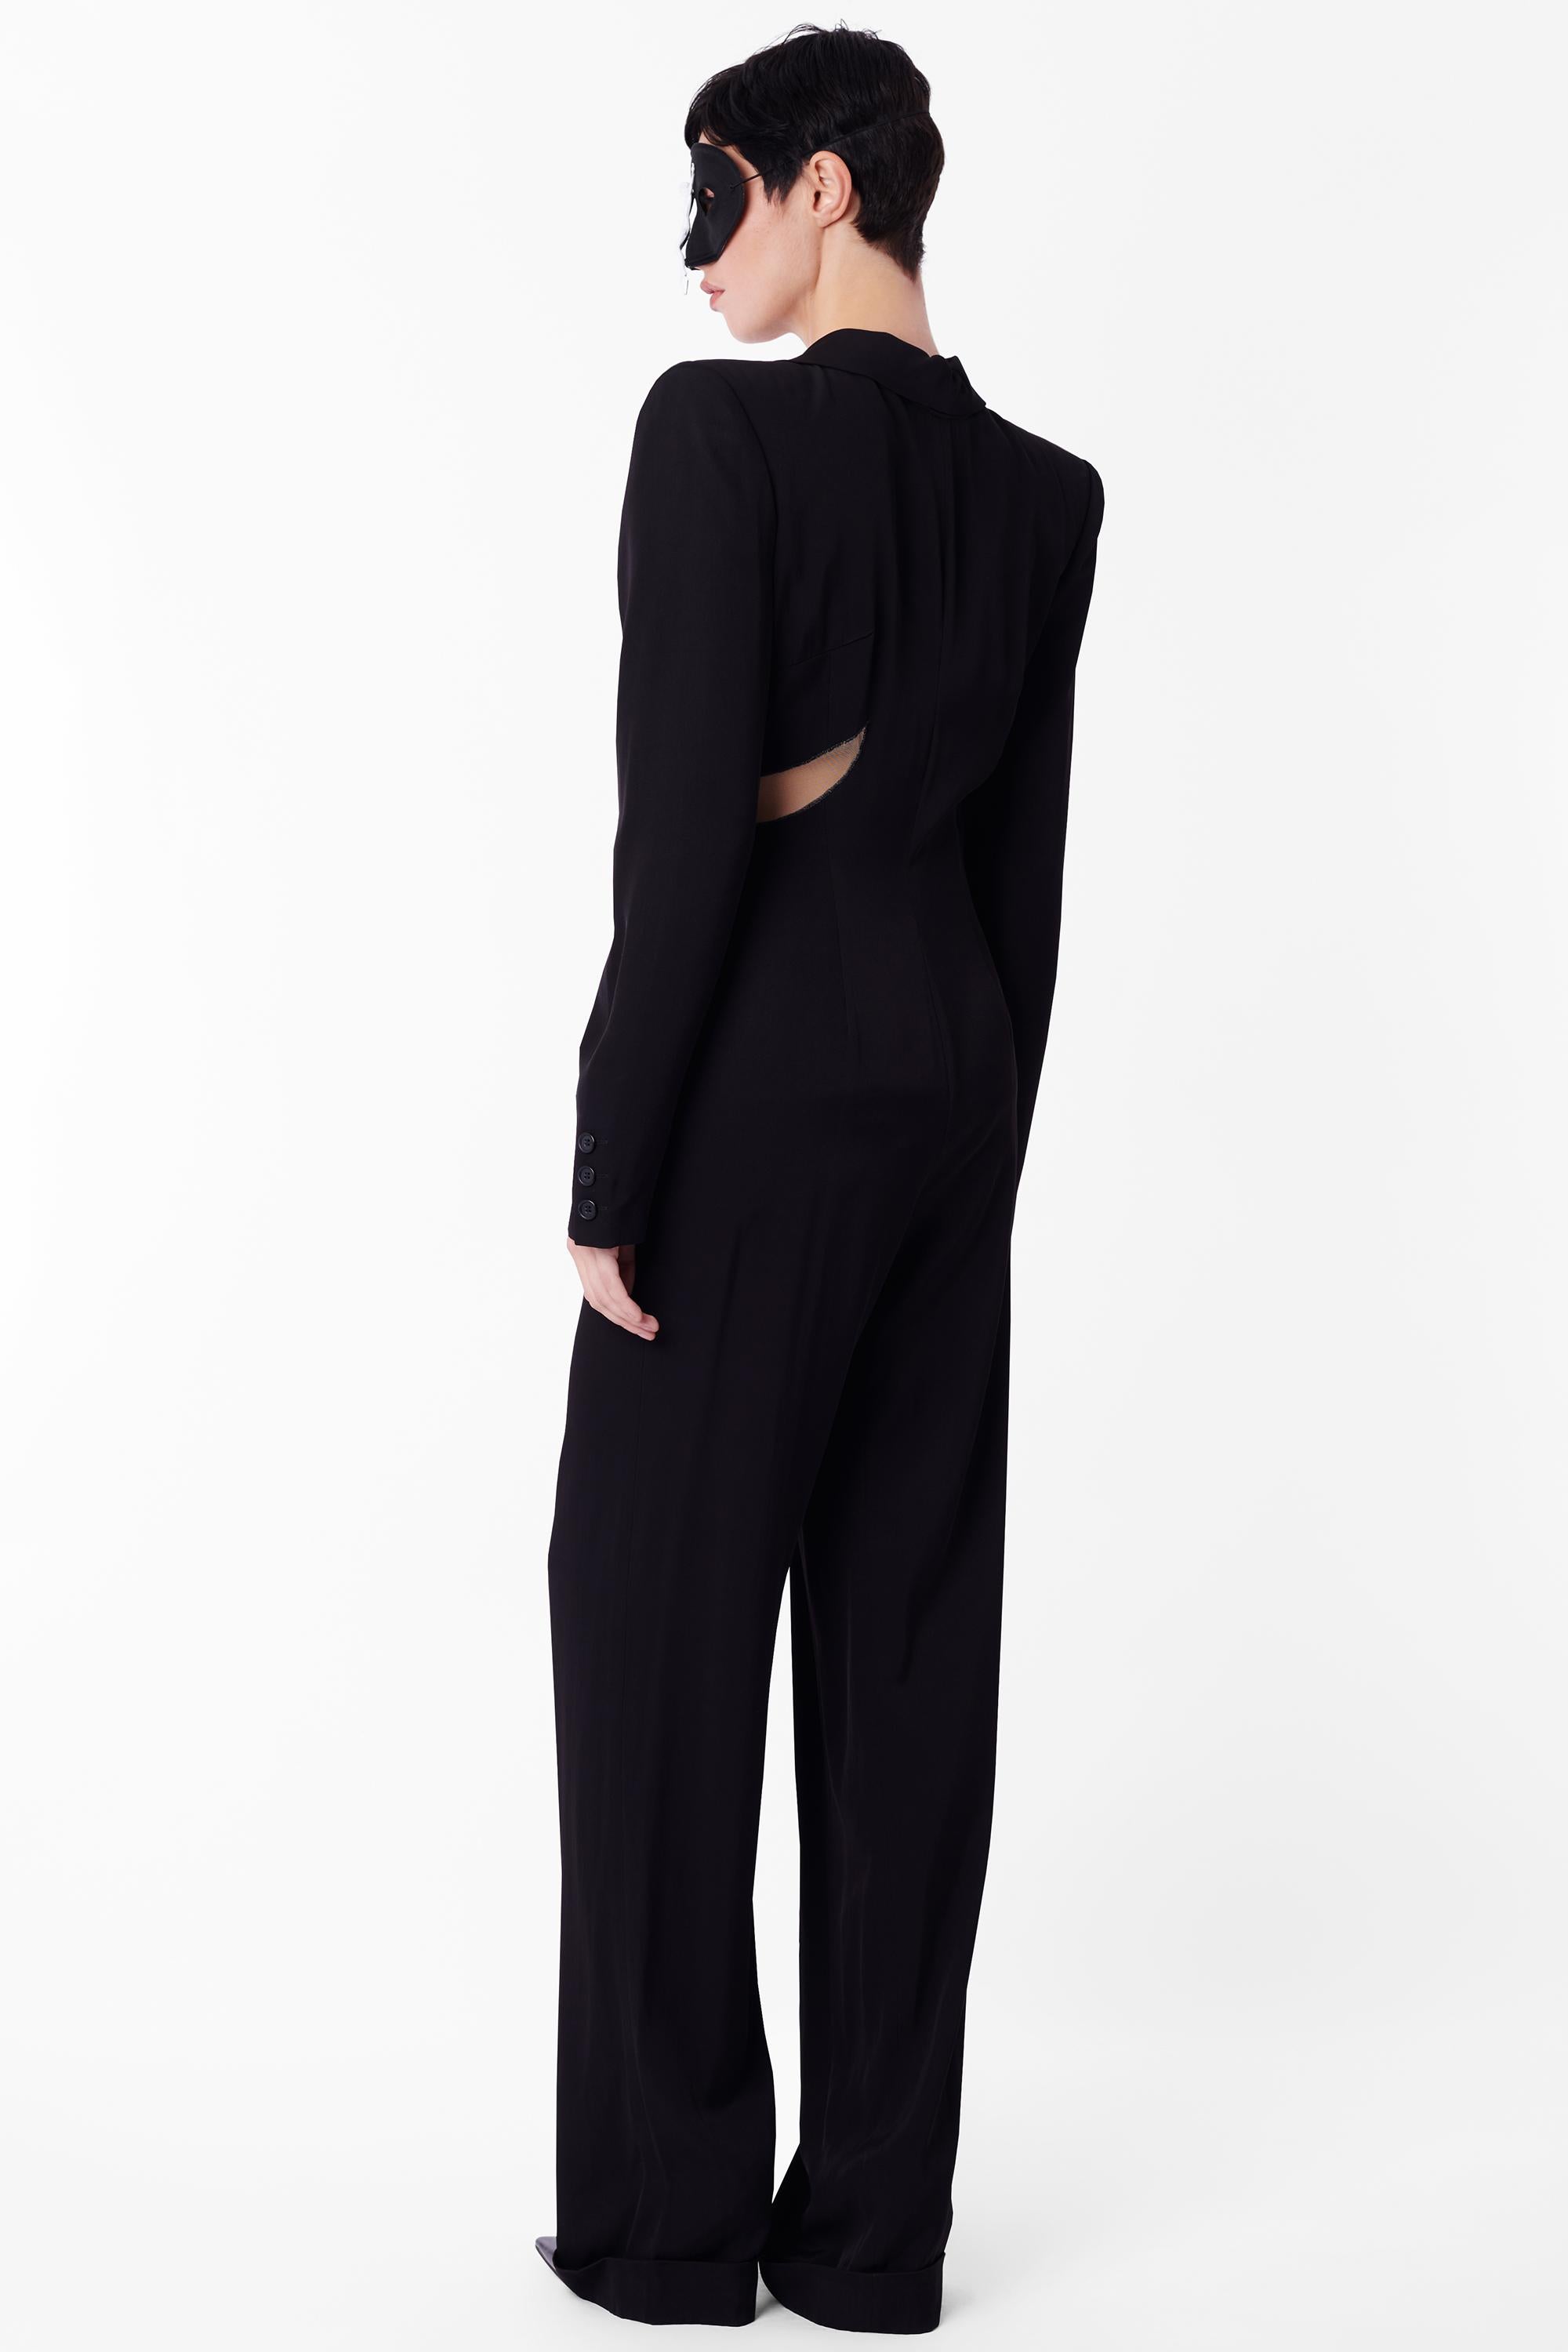 Vintage Alexander McQueen Spring Summer 1997 black jumpsuit, look 22 from the 'La Poupée' collection. Silhouette noire à manches longues avec partie supérieure structurée avec épaulettes, revers allant jusqu'au bas de l'abdomen, centre transparent